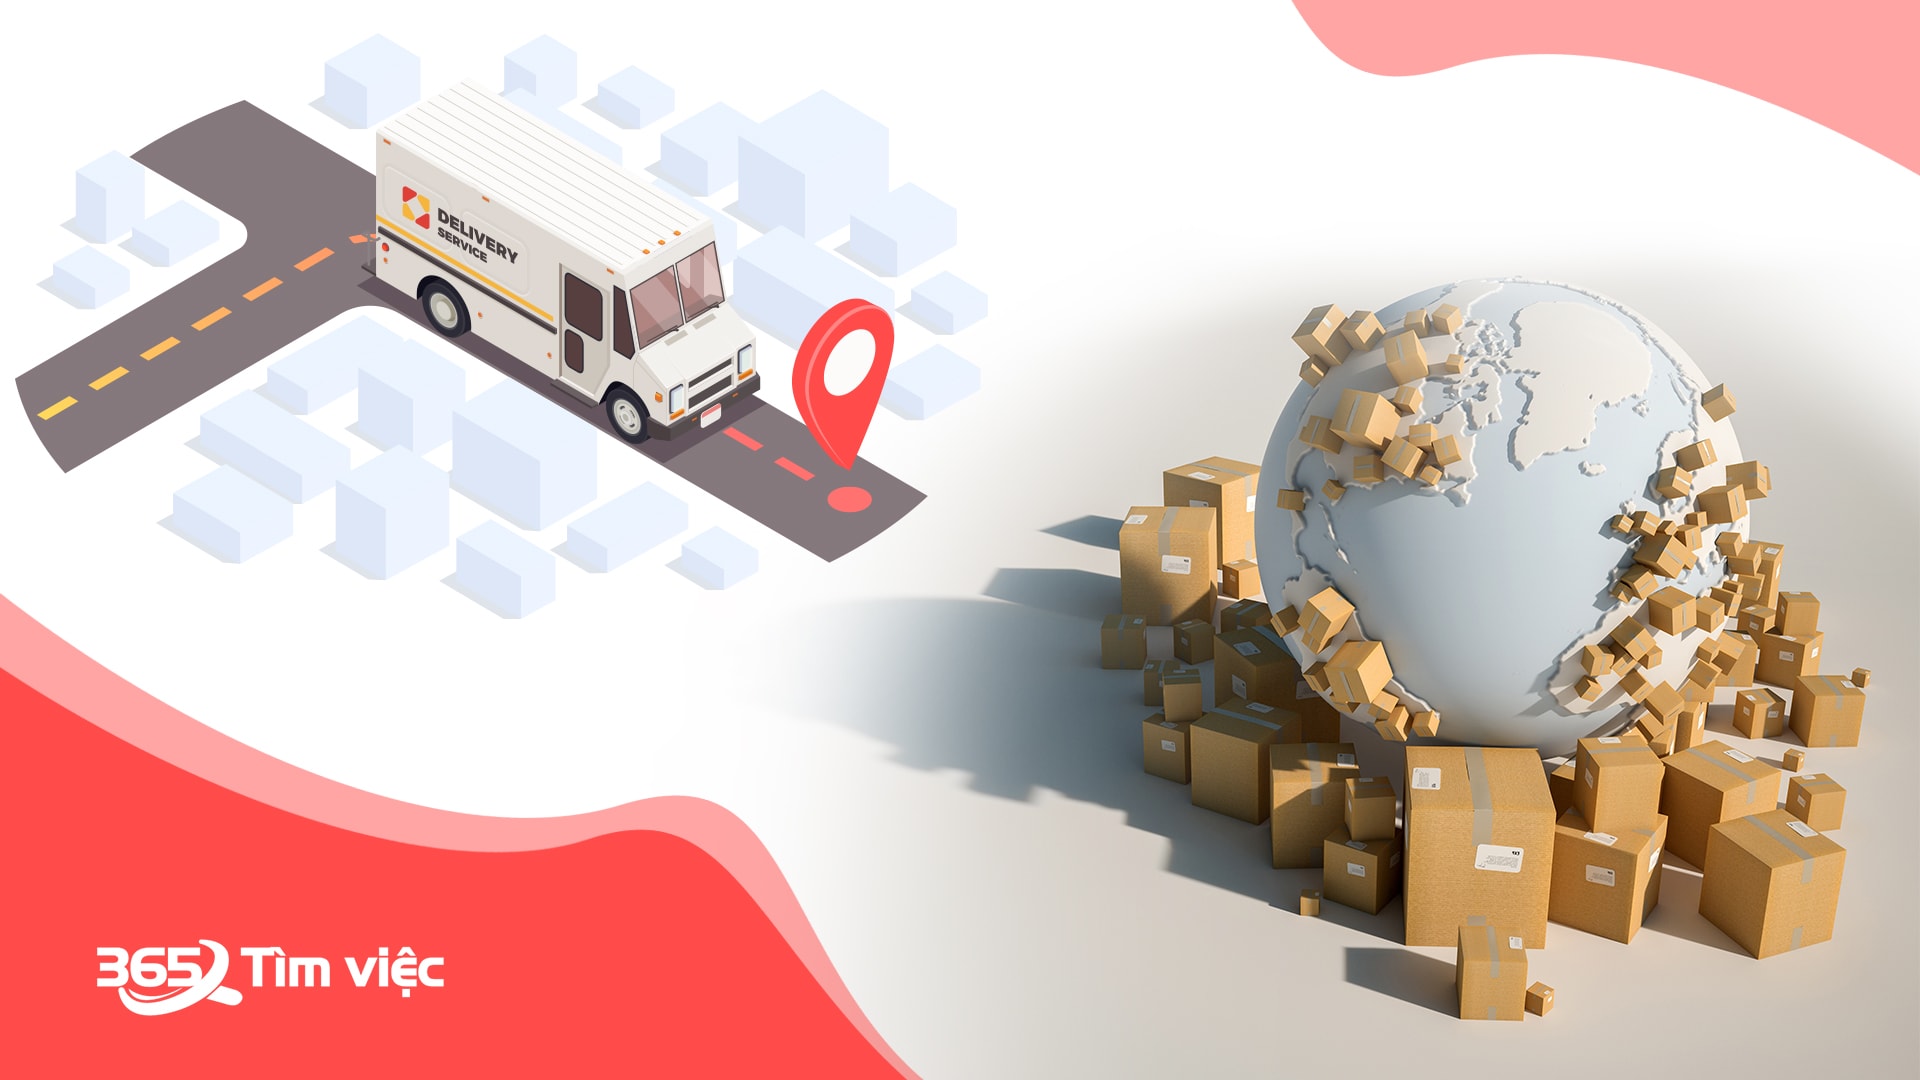 Các loại kho bãi điển hình hiện nay trong ngành Logistic và quy định về các điều kiện kinh doanh dịch vụ này